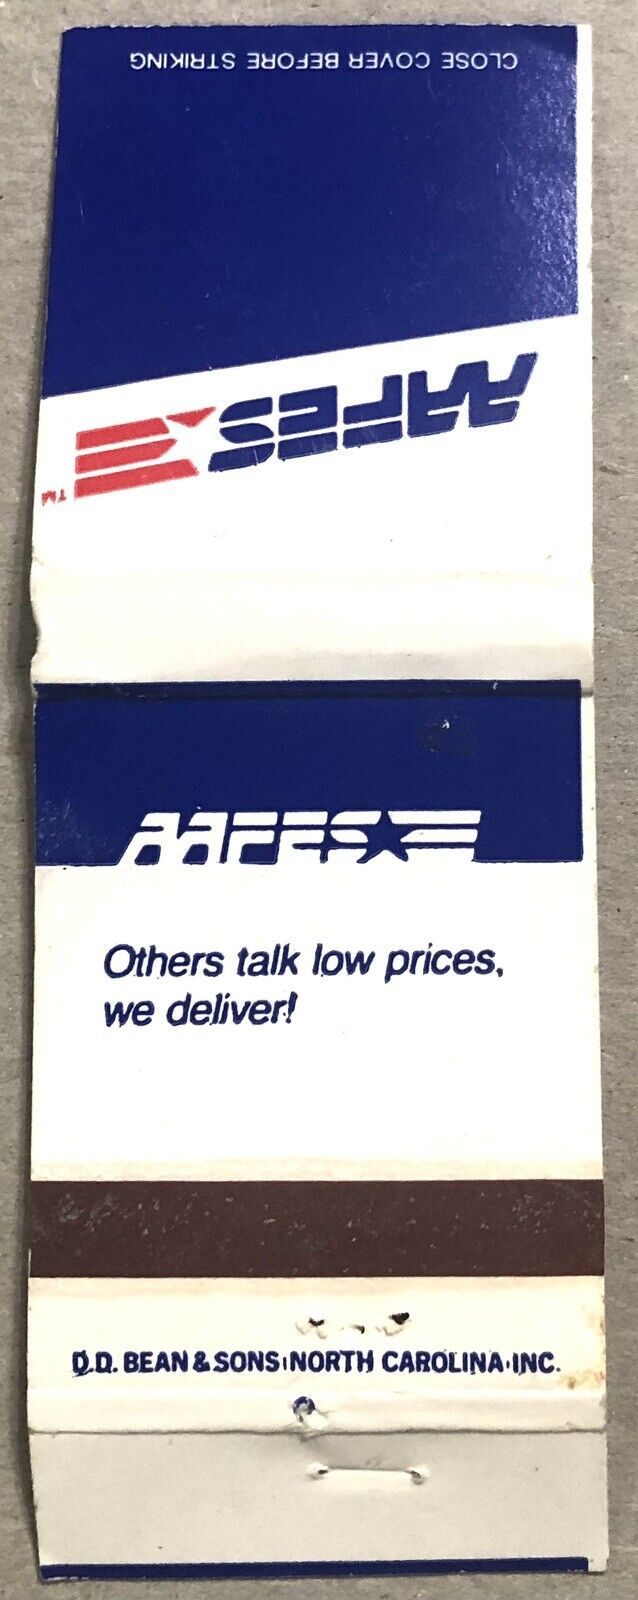 Vintage 20 Strike Matchbook Cover - AAFES Others Talk Low Prices We Deliver